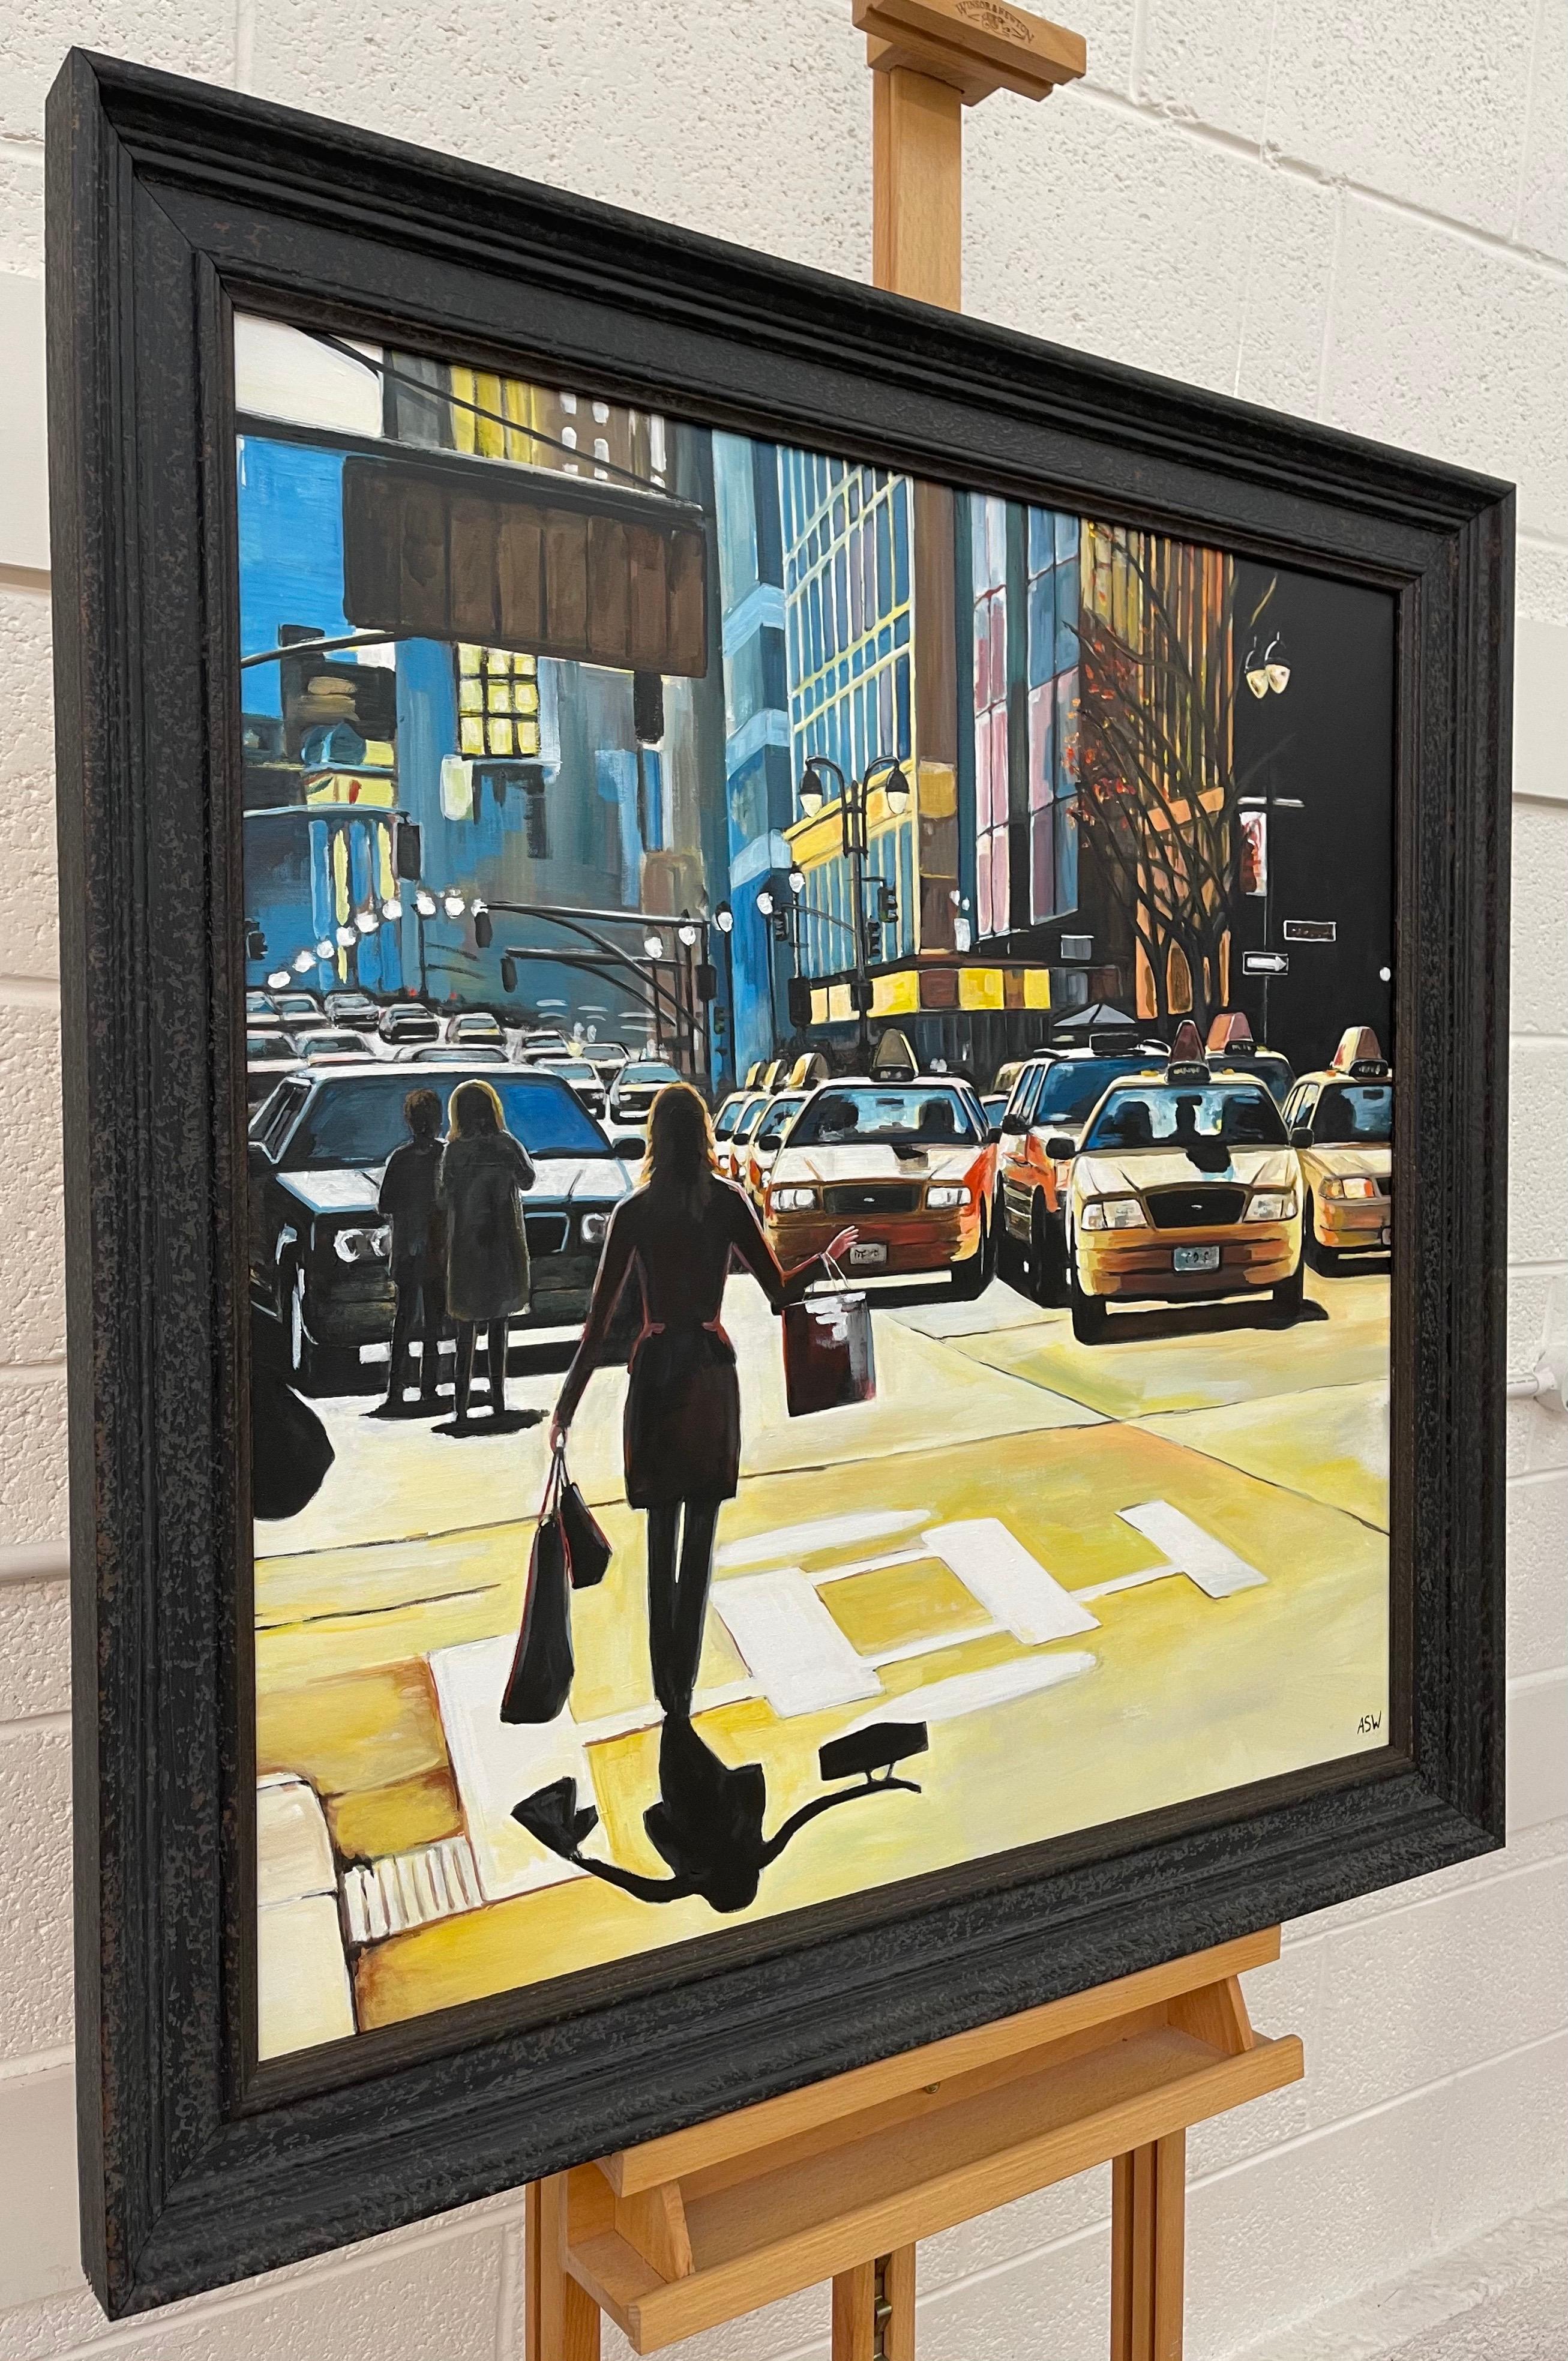 Shopping in New York City Sunshine von zeitgenössischer britischer Künstlerin (Realismus), Painting, von Angela Wakefield